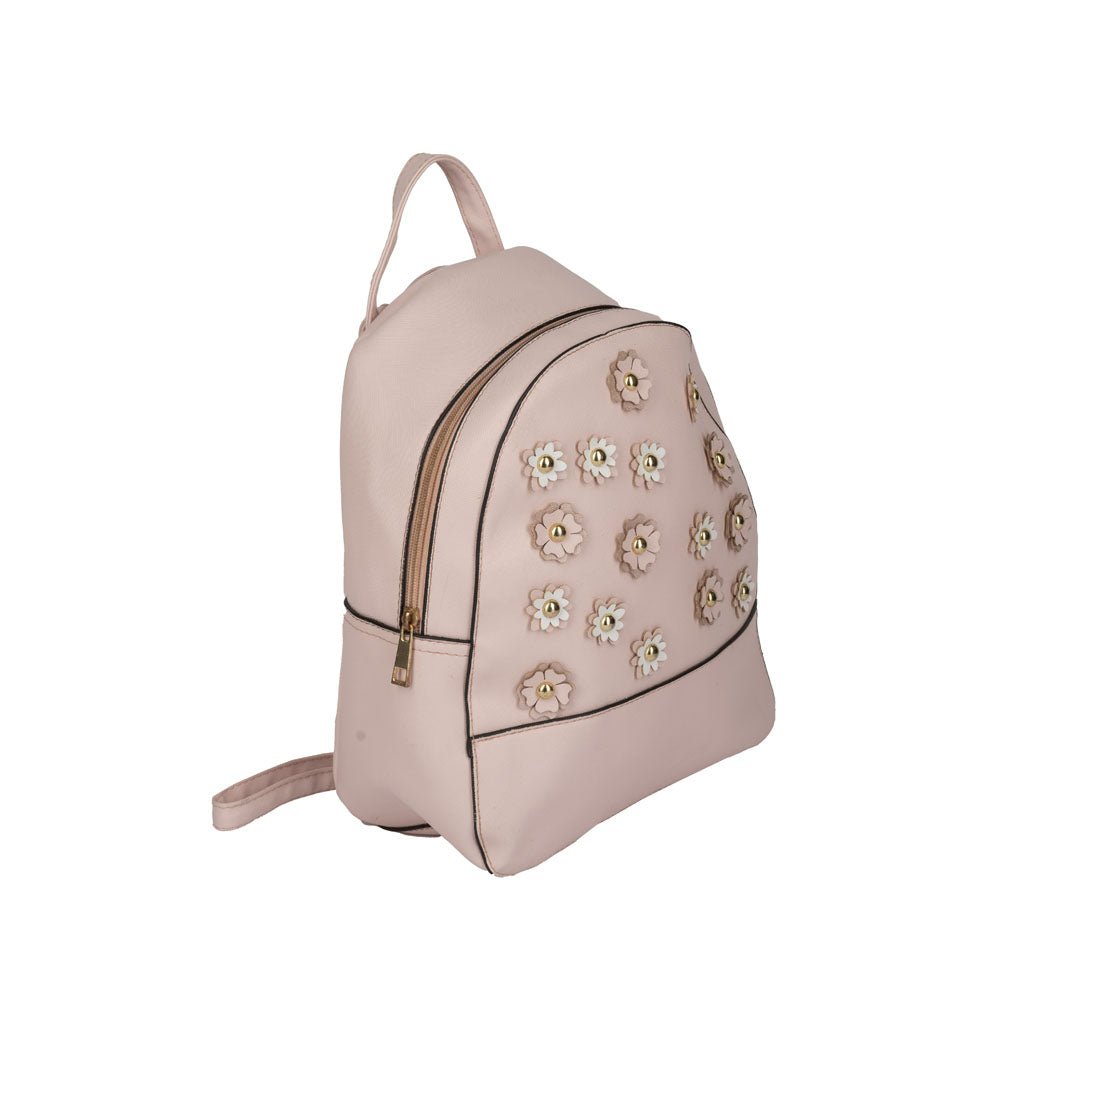 Ardene Bag | Bags, Ardene, Clothes design